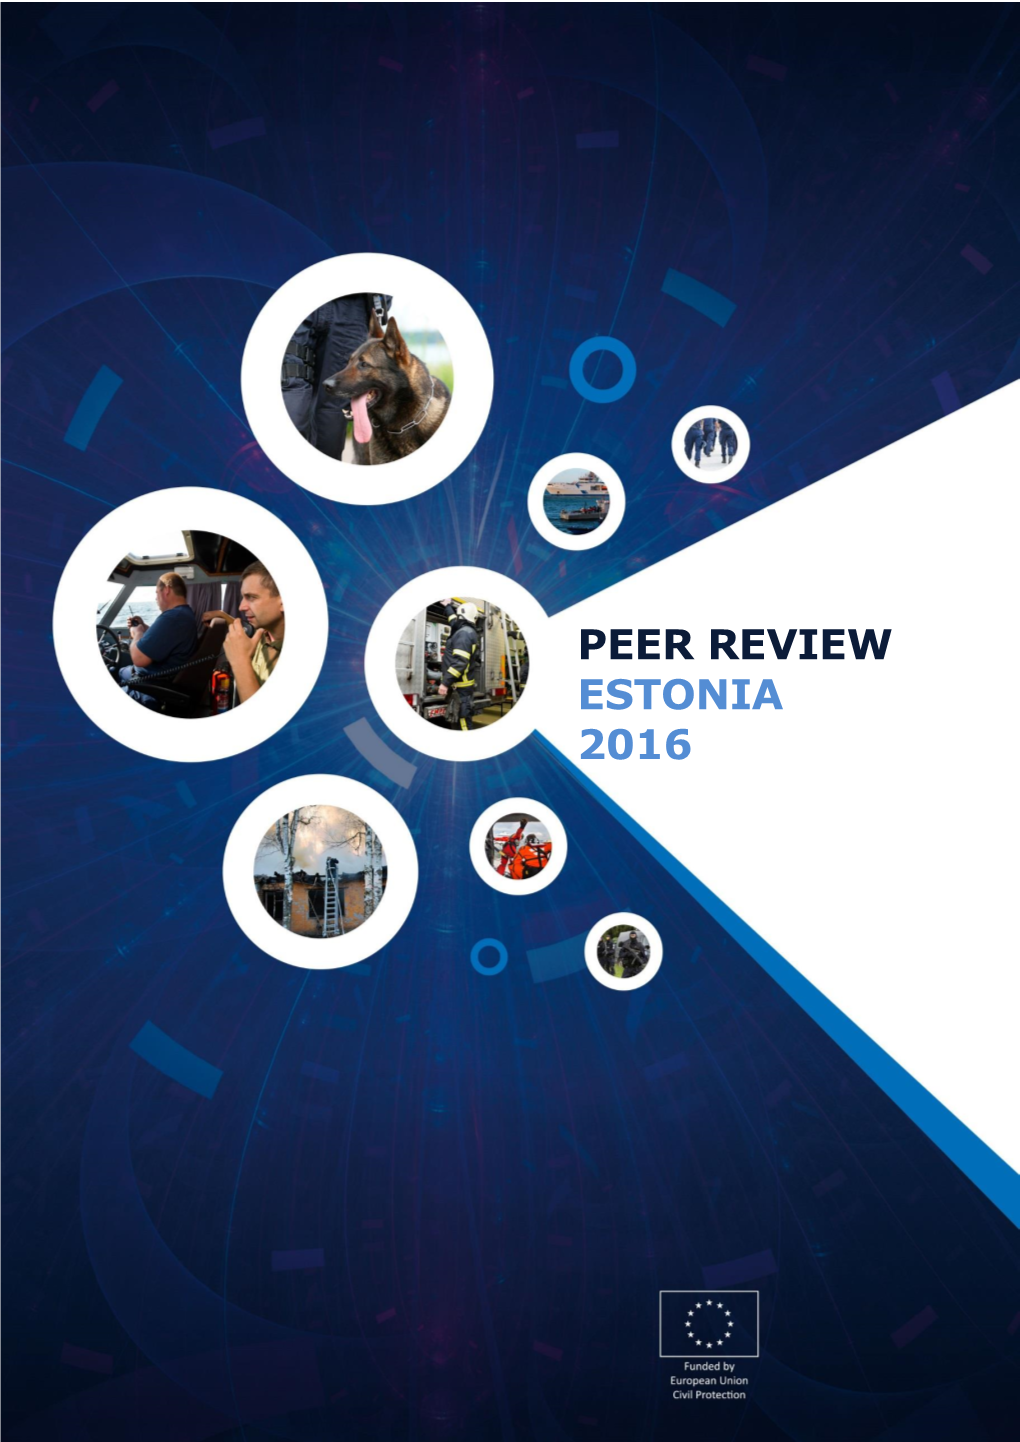 Peer Review Estonia 2016